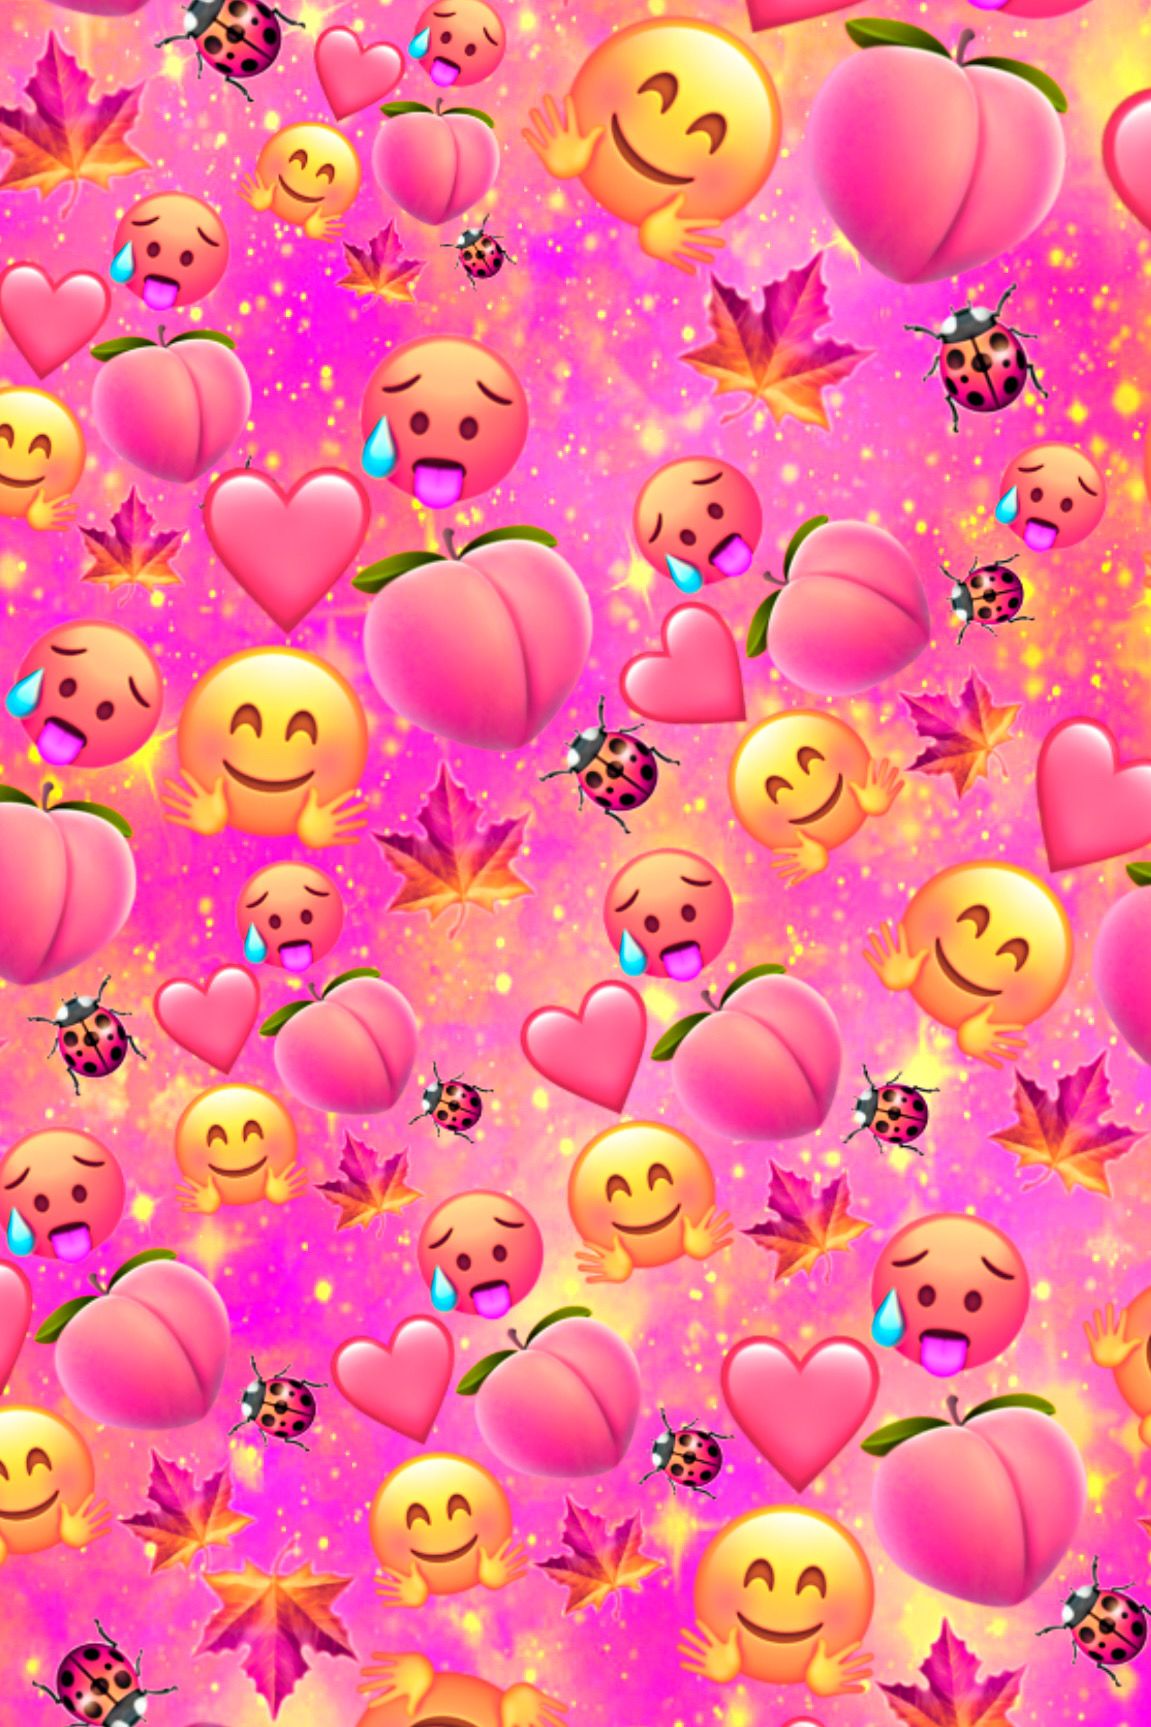 Hình nền Peach Emoji Galaxy sẽ mang đến cho bạn một bầu trời đầy màu sắc và đầy những hình ảnh đáng yêu. Hãy để những hình ảnh này làm nổi bật điện thoại của bạn.